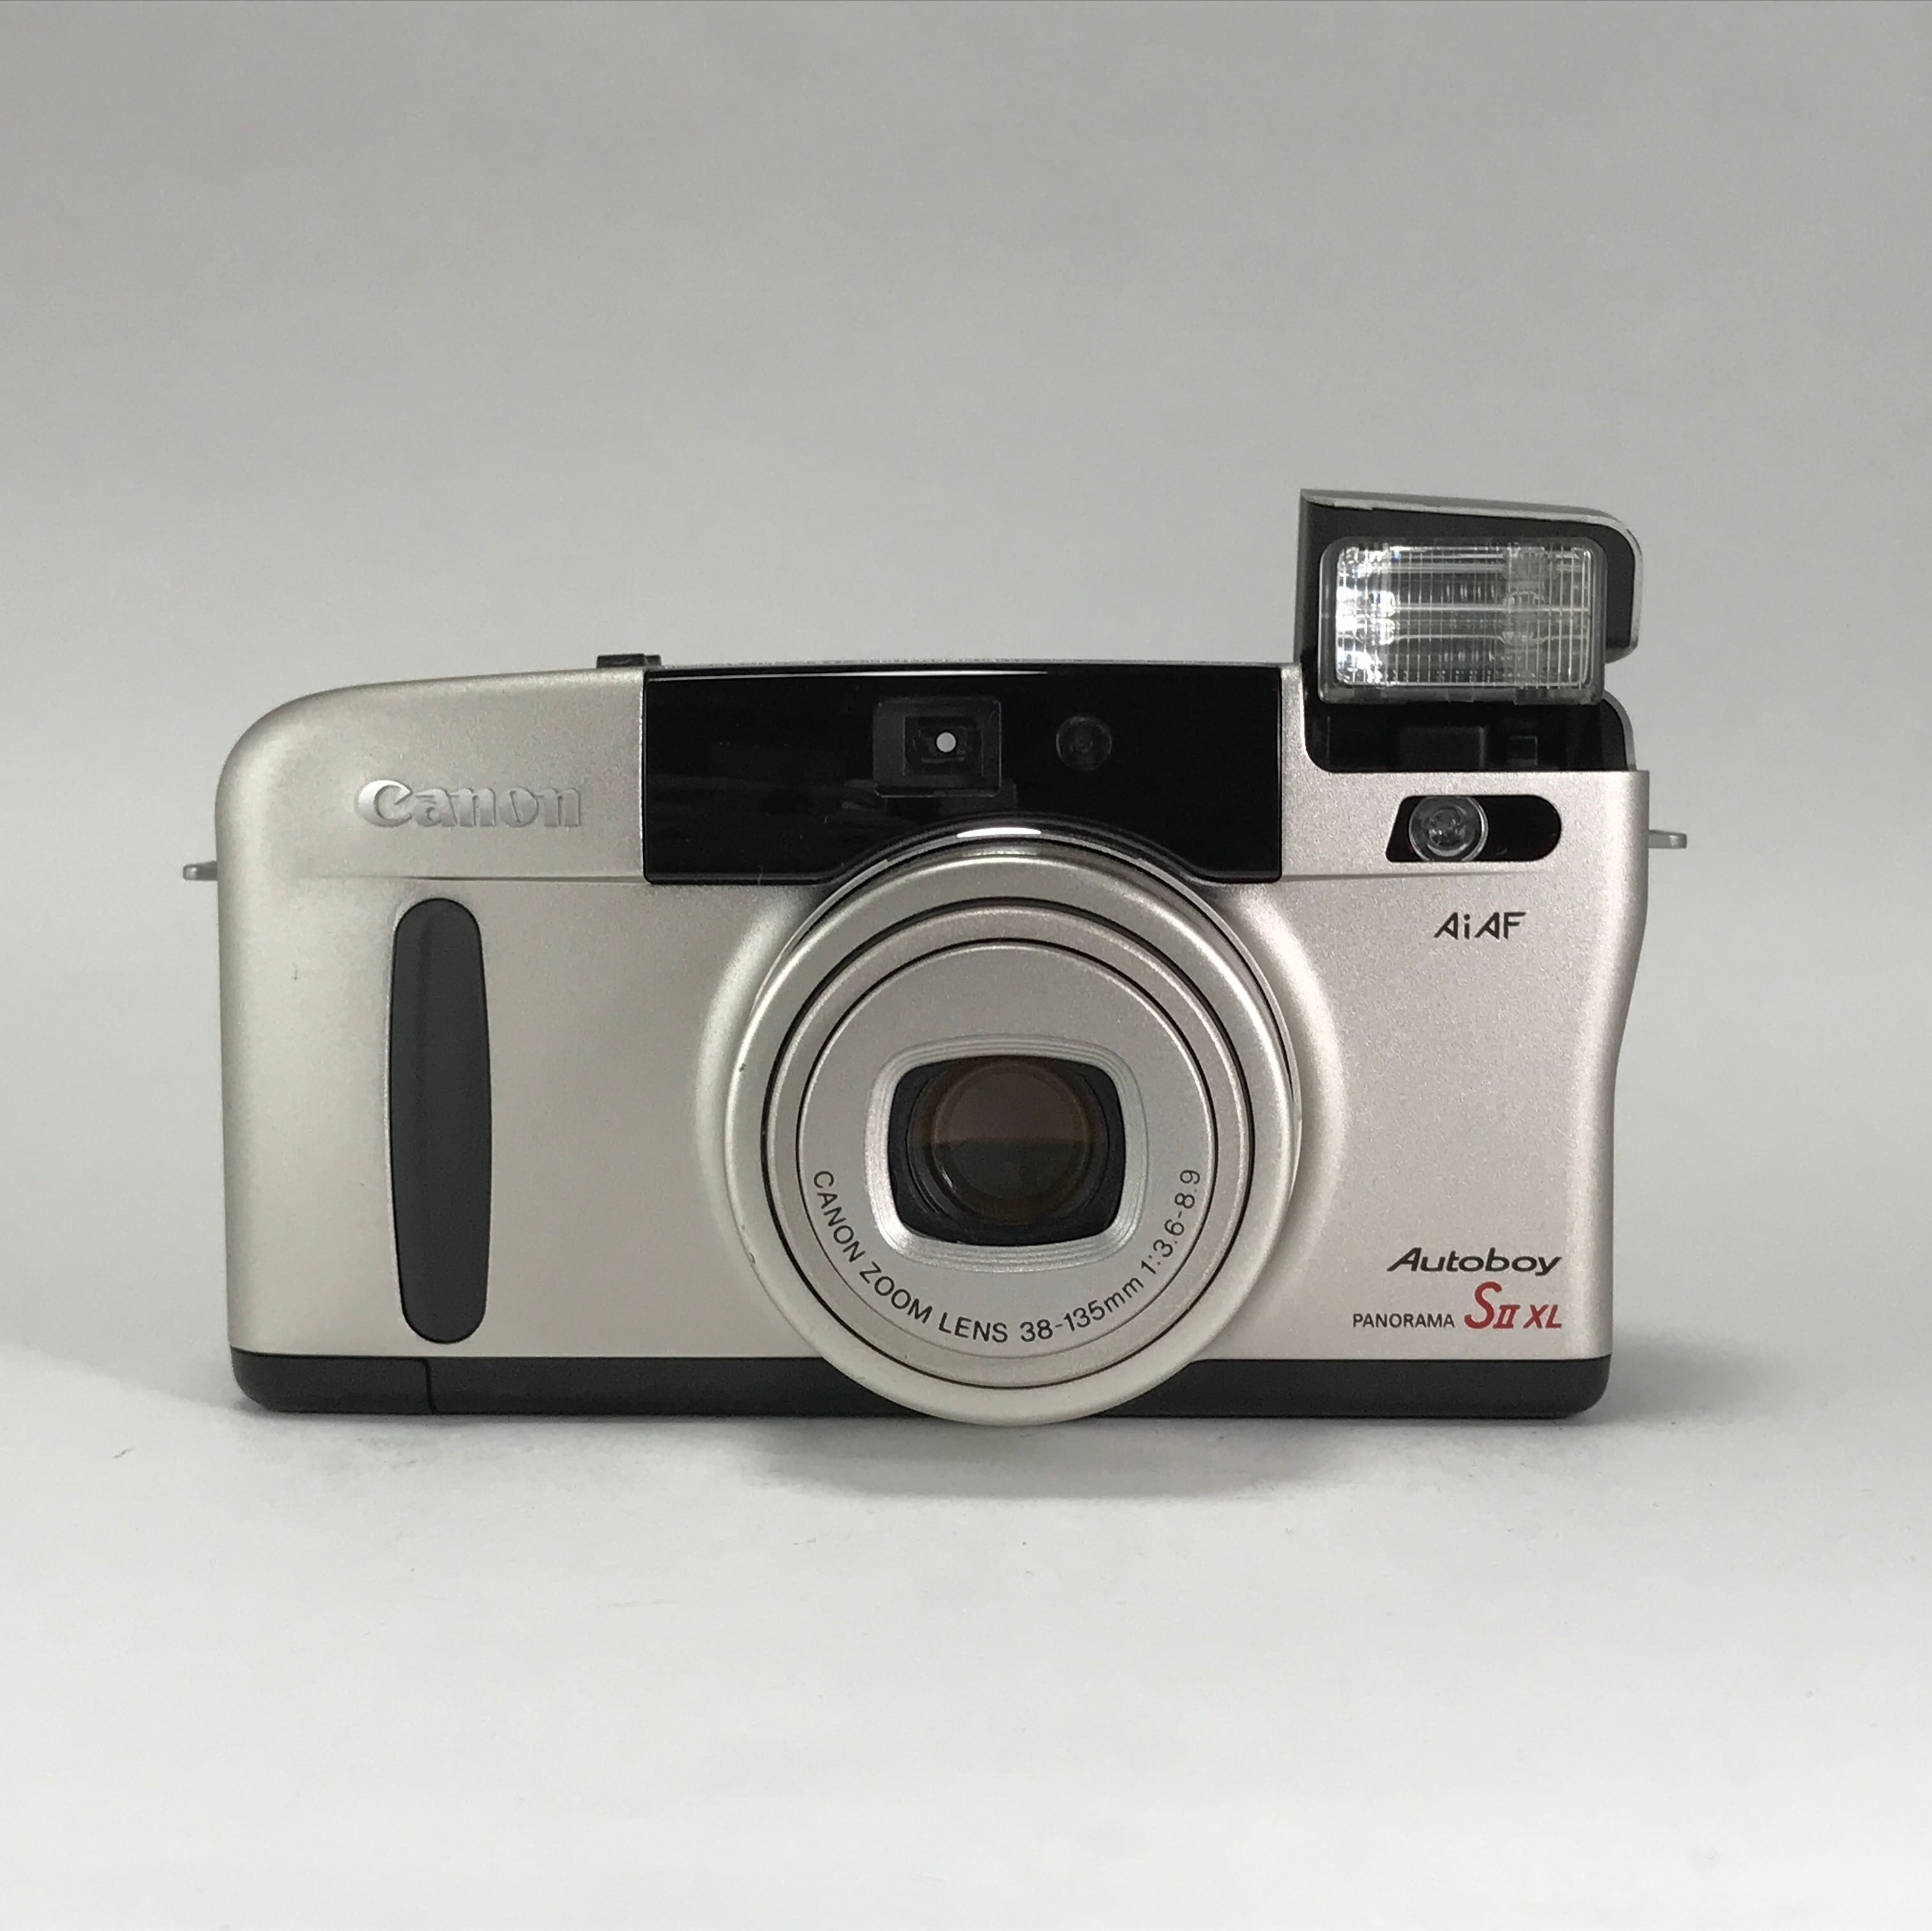 Canon Autoboy S II XL フィルムカメラ - フィルムカメラ